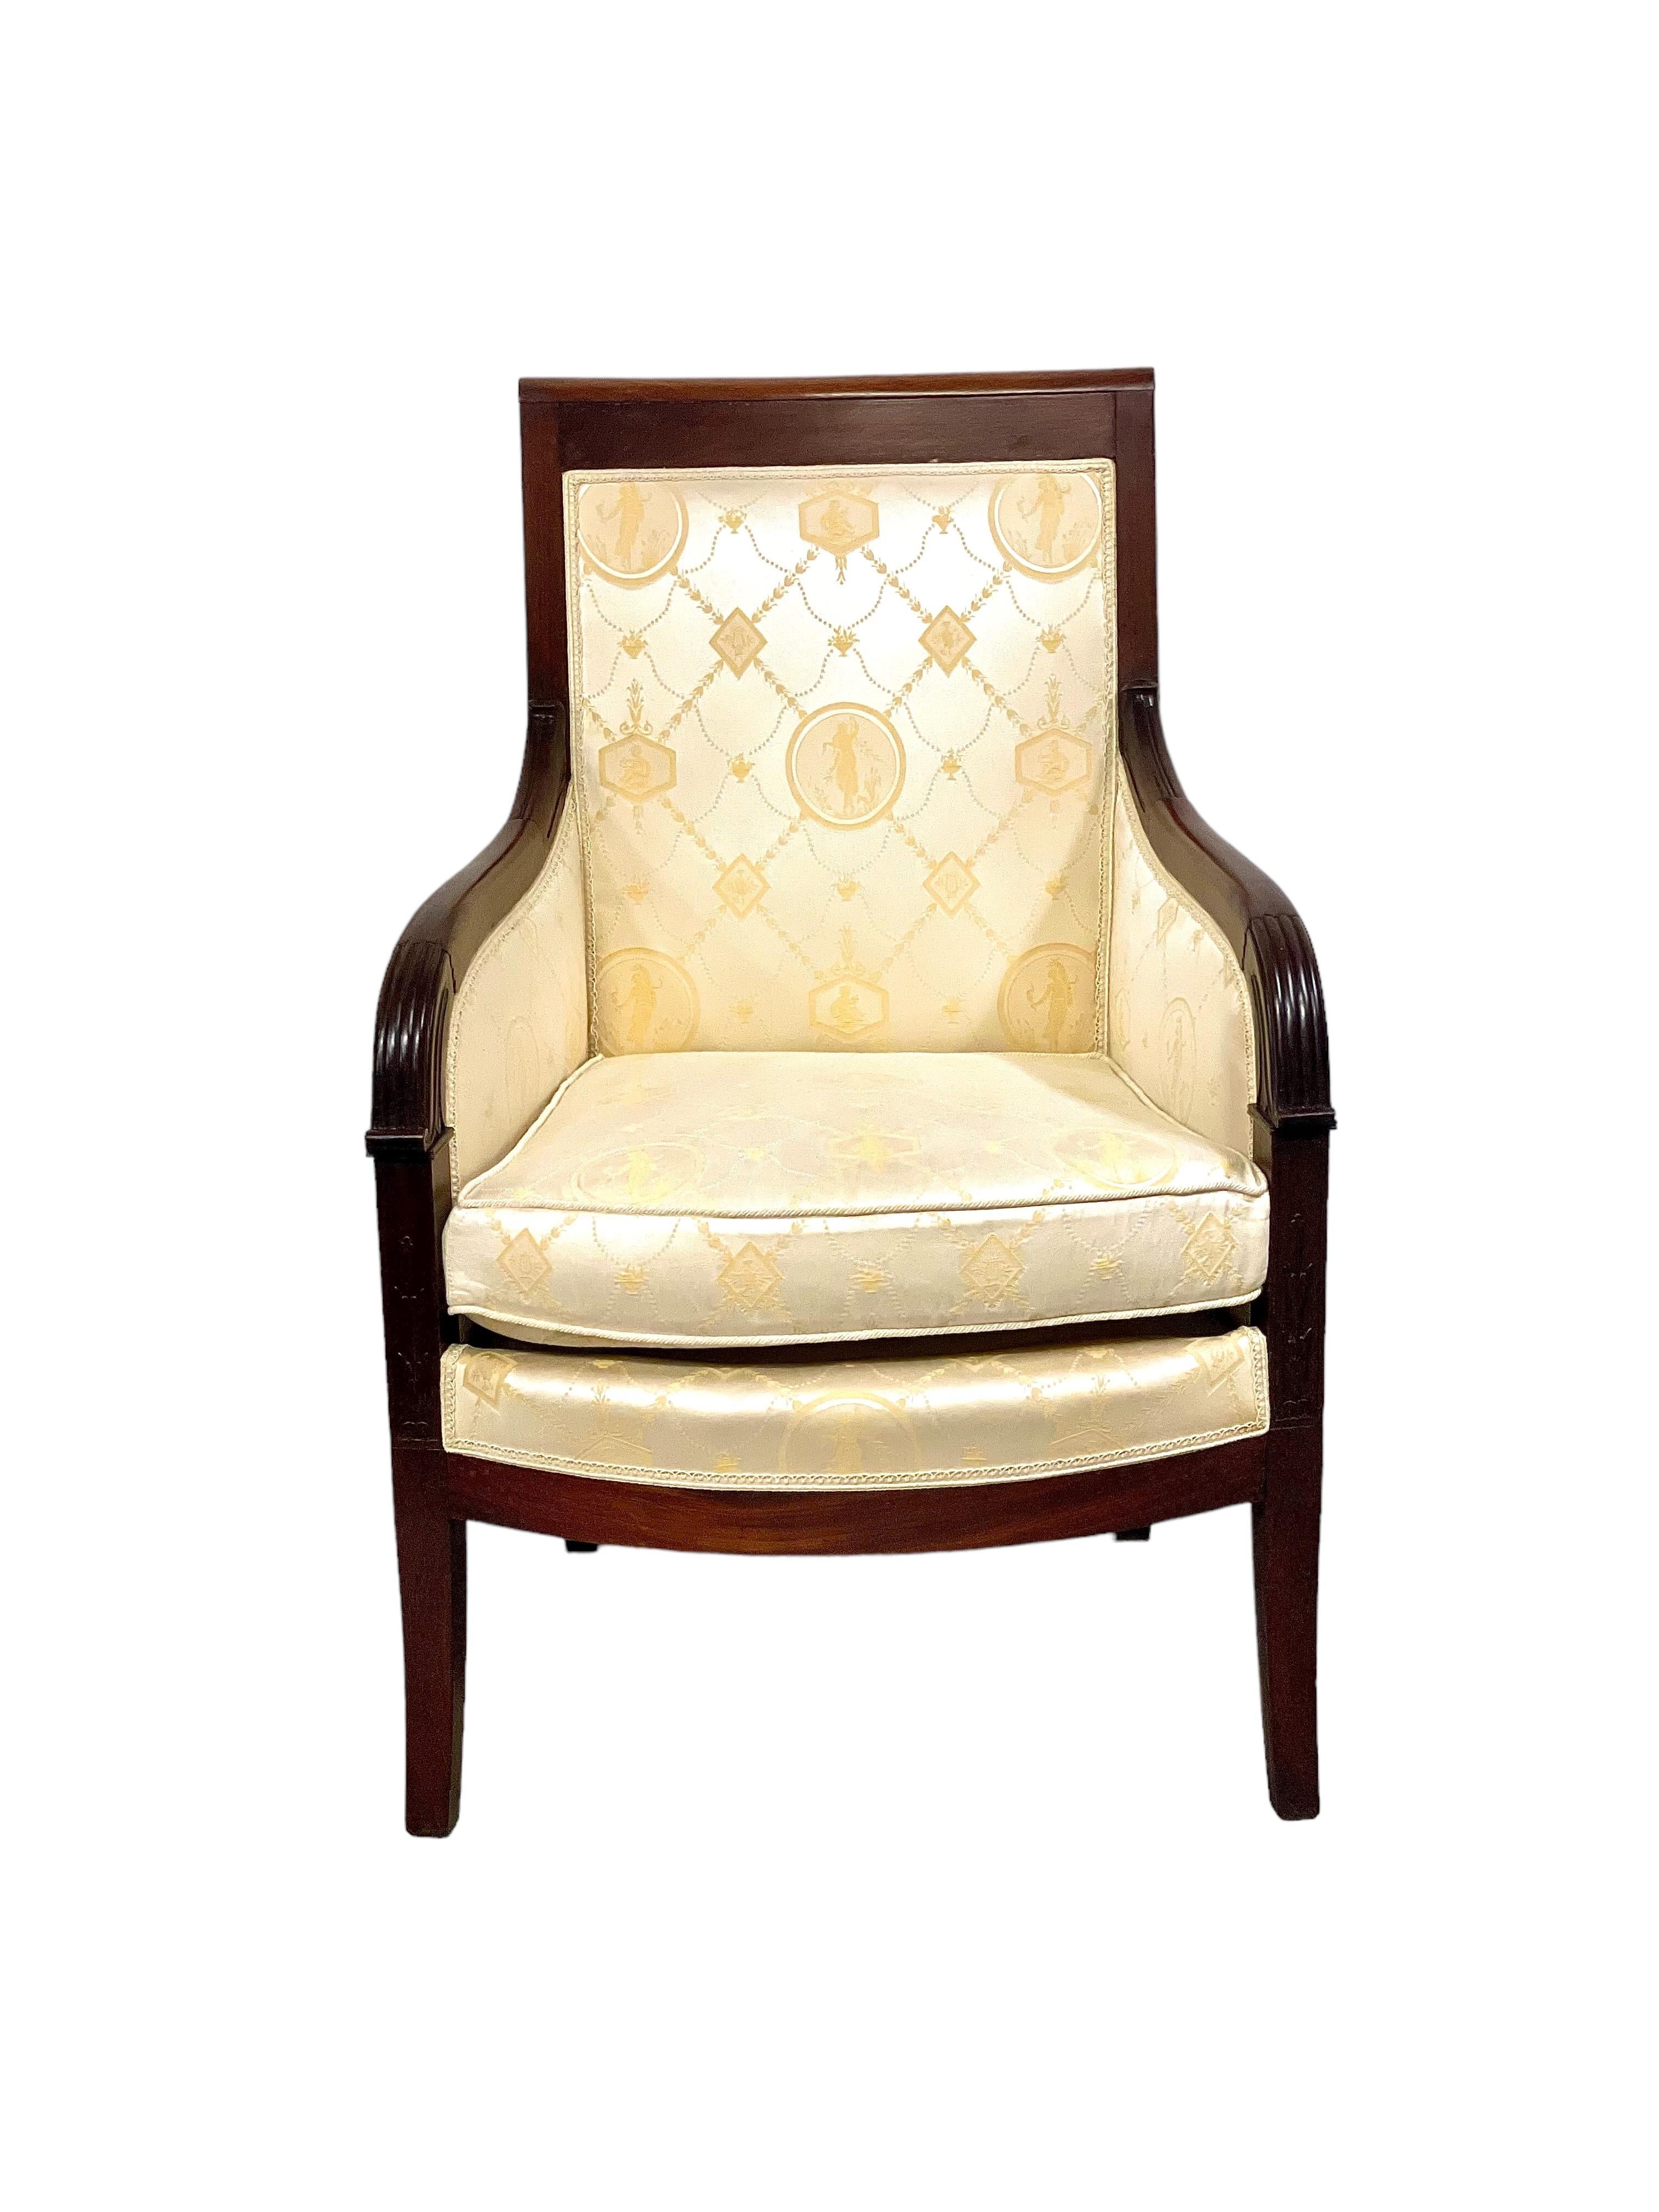 Une belle paire de fauteuils Bergère en tissu, en acajou massif et placage d'acajou. Datant de la période Empire, ces chaises très remarquables sont en excellent état, avec une tapisserie en tissu crème délicieusement tissé présentant un motif